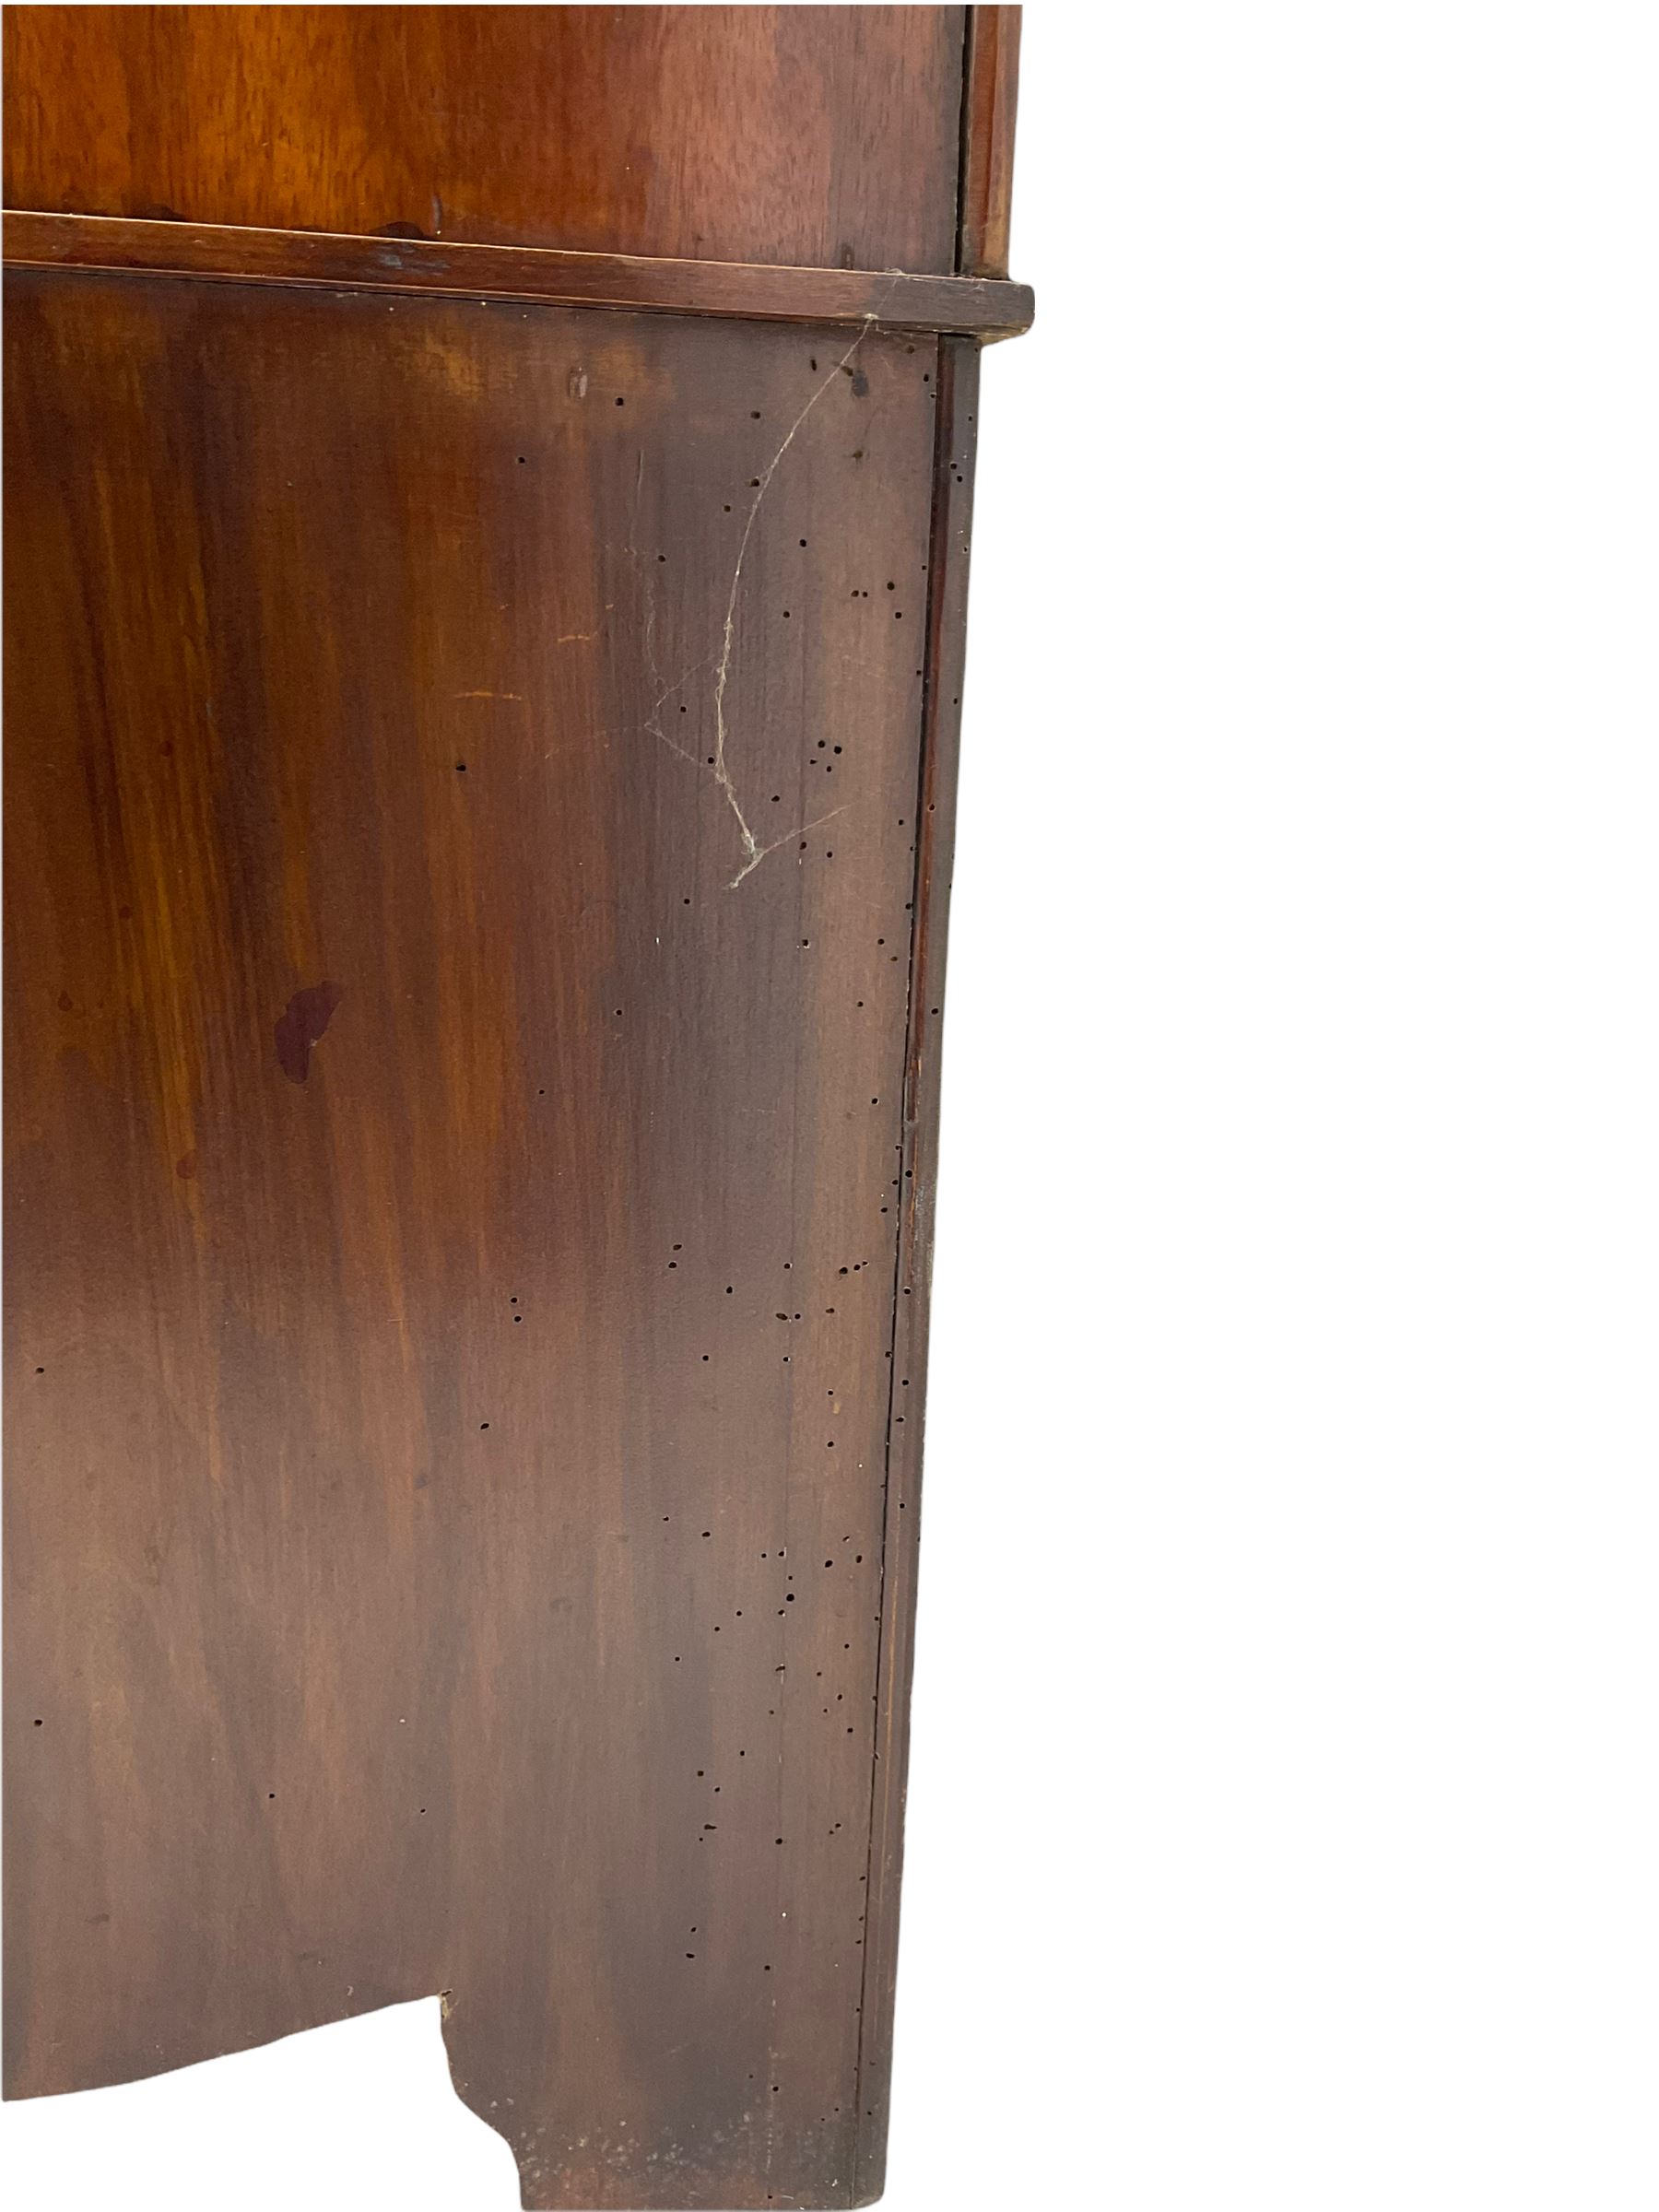 Edwardian inlaid mahogany wardrobe - Image 8 of 8